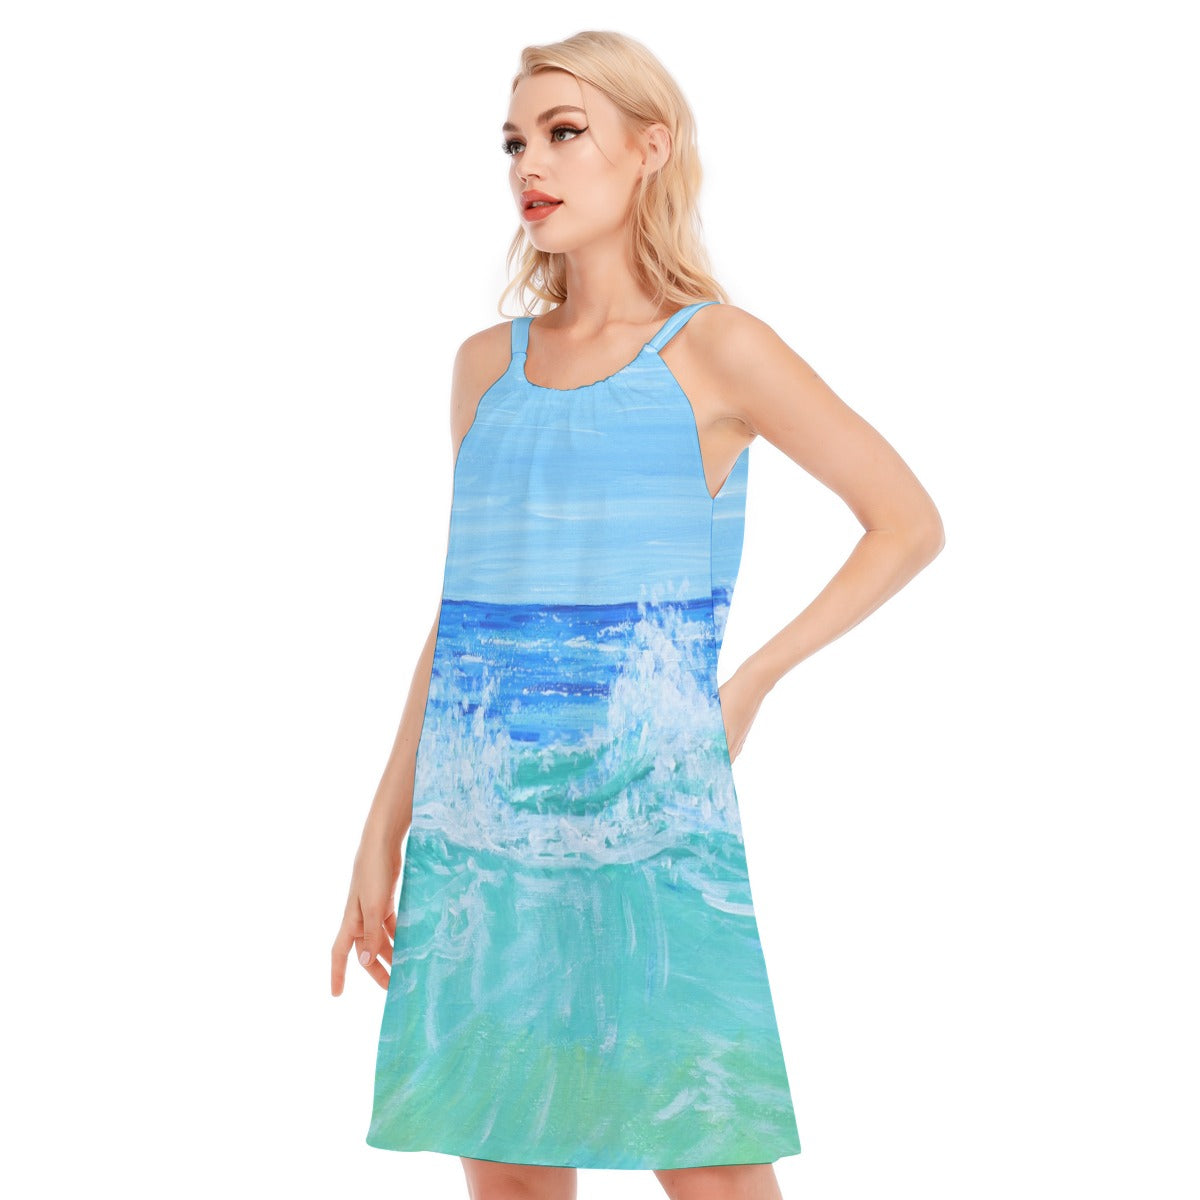 Women's Resort Dress Cotton / Vacation Dress/ Beach Dress with Blue Wave